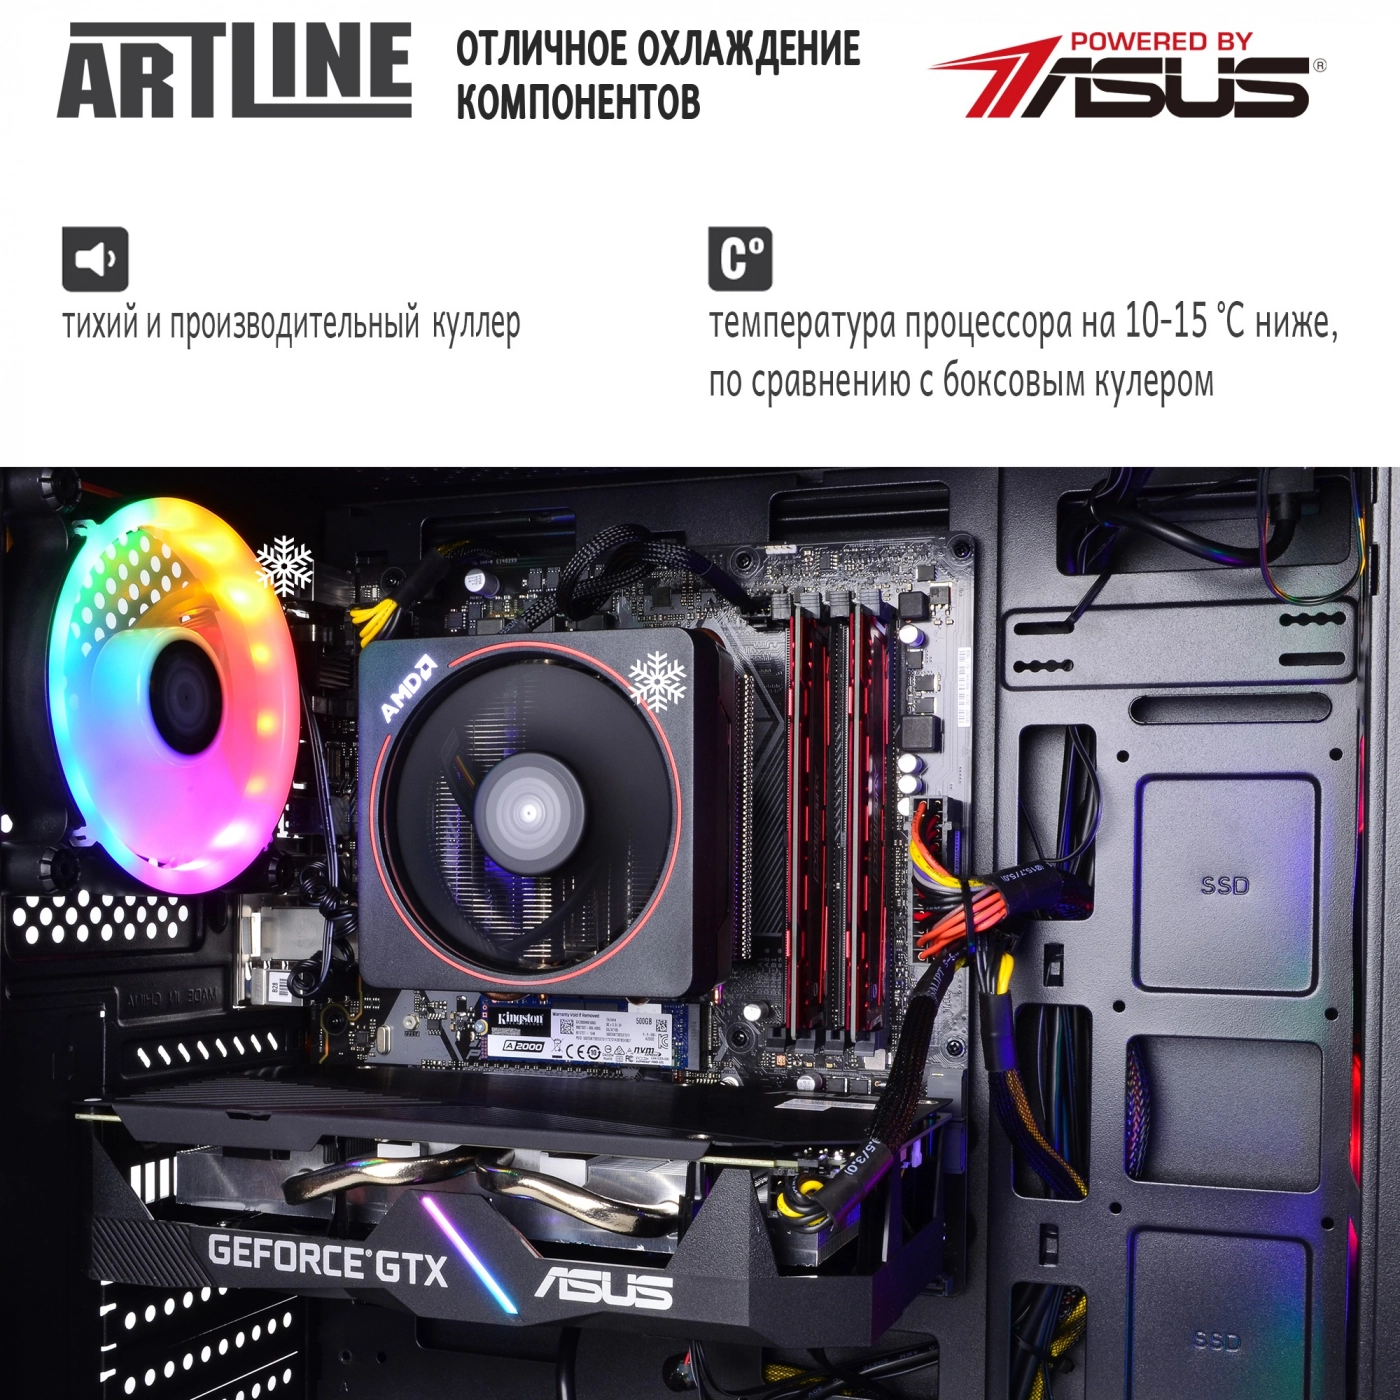 Купить Компьютер ARTLINE Gaming X43v11 - фото 6